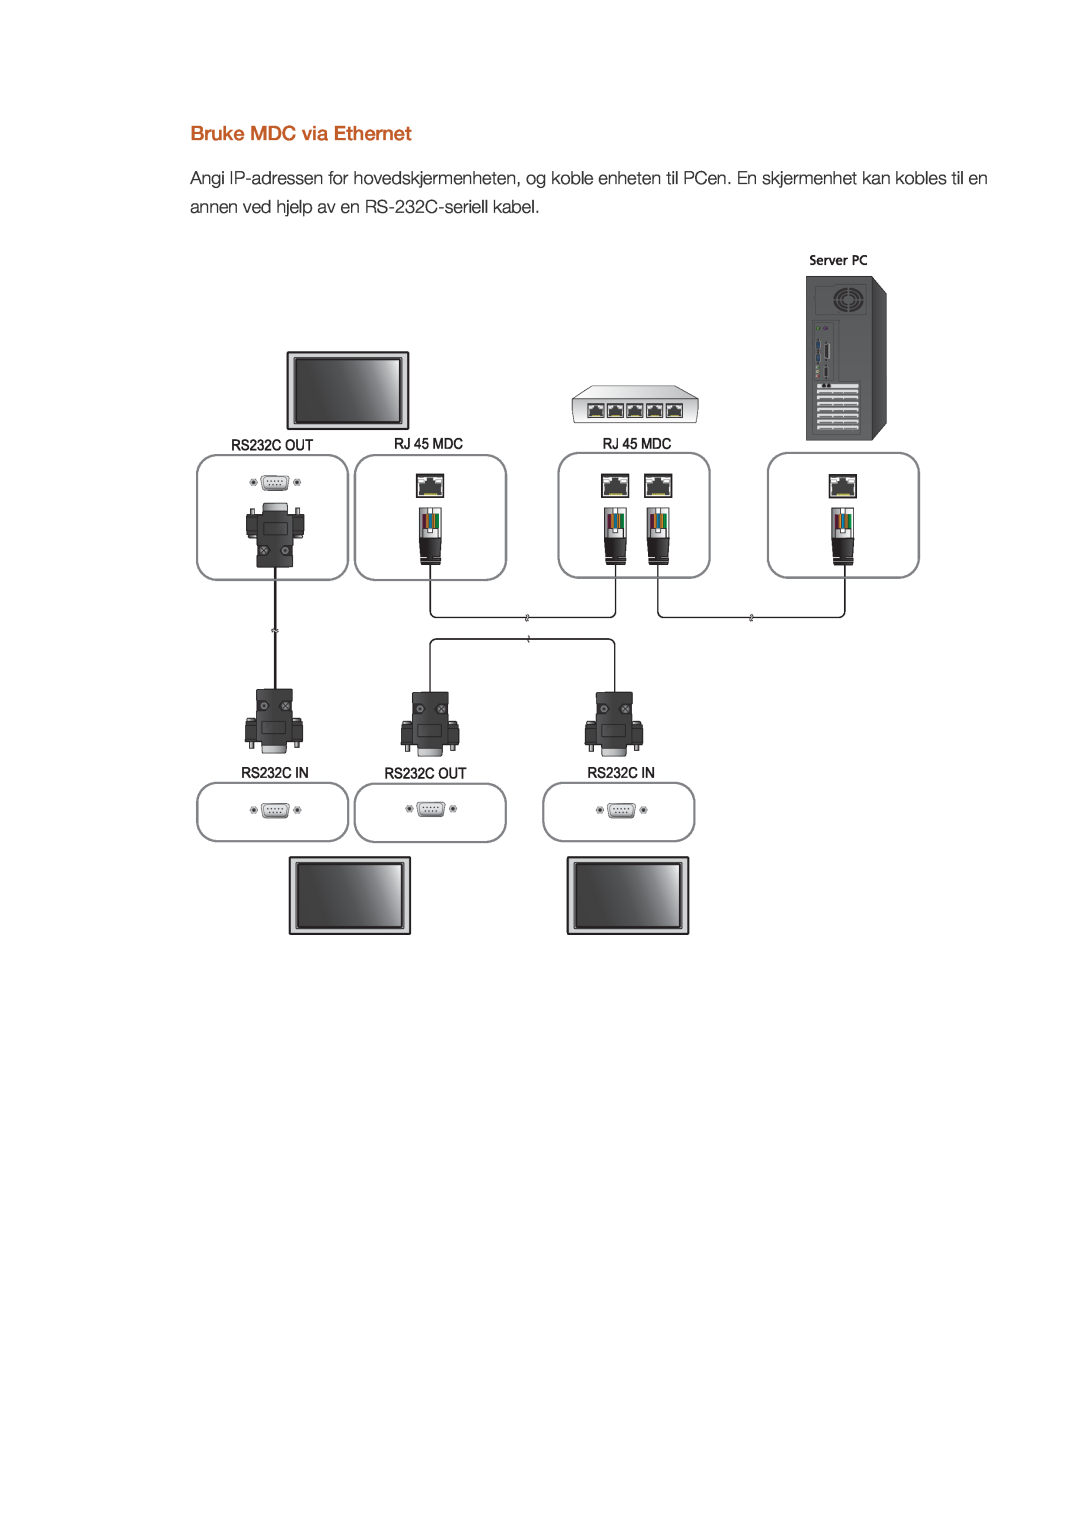 Samsung LH32CRSMBC/EN, LH32CRTMBC/EN, LH32CRSMBD/EN Bruke MDC via Ethernet, annen ved hjelp av en RS-232C-seriell kabel 